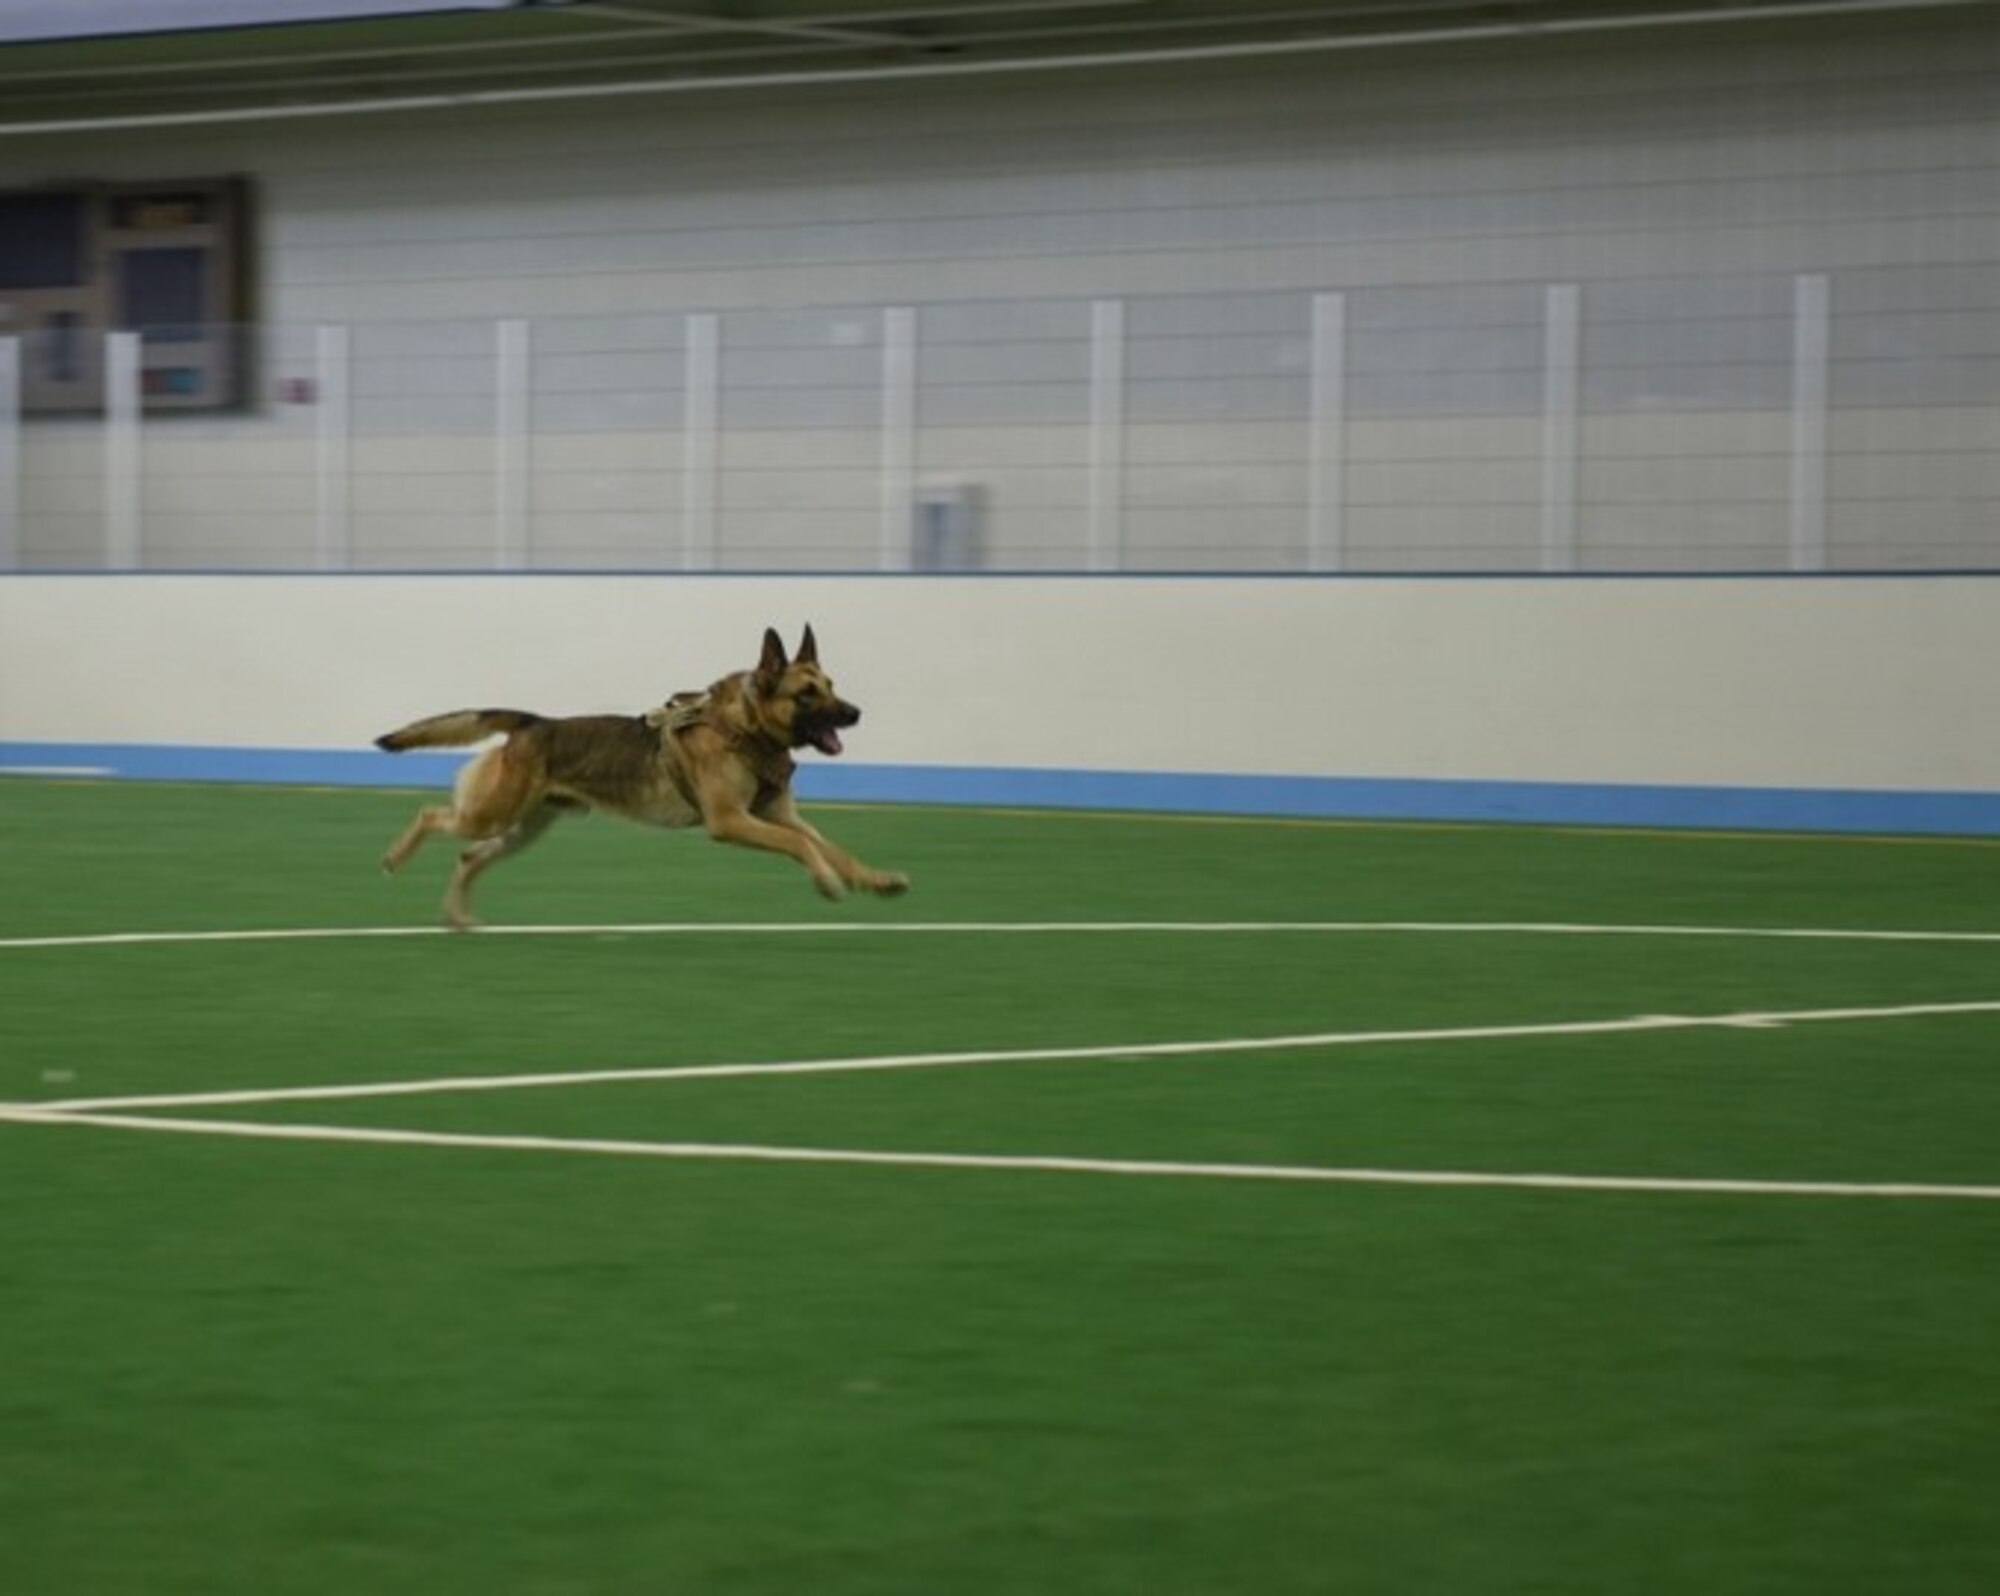 A dog runs across an indoor field.